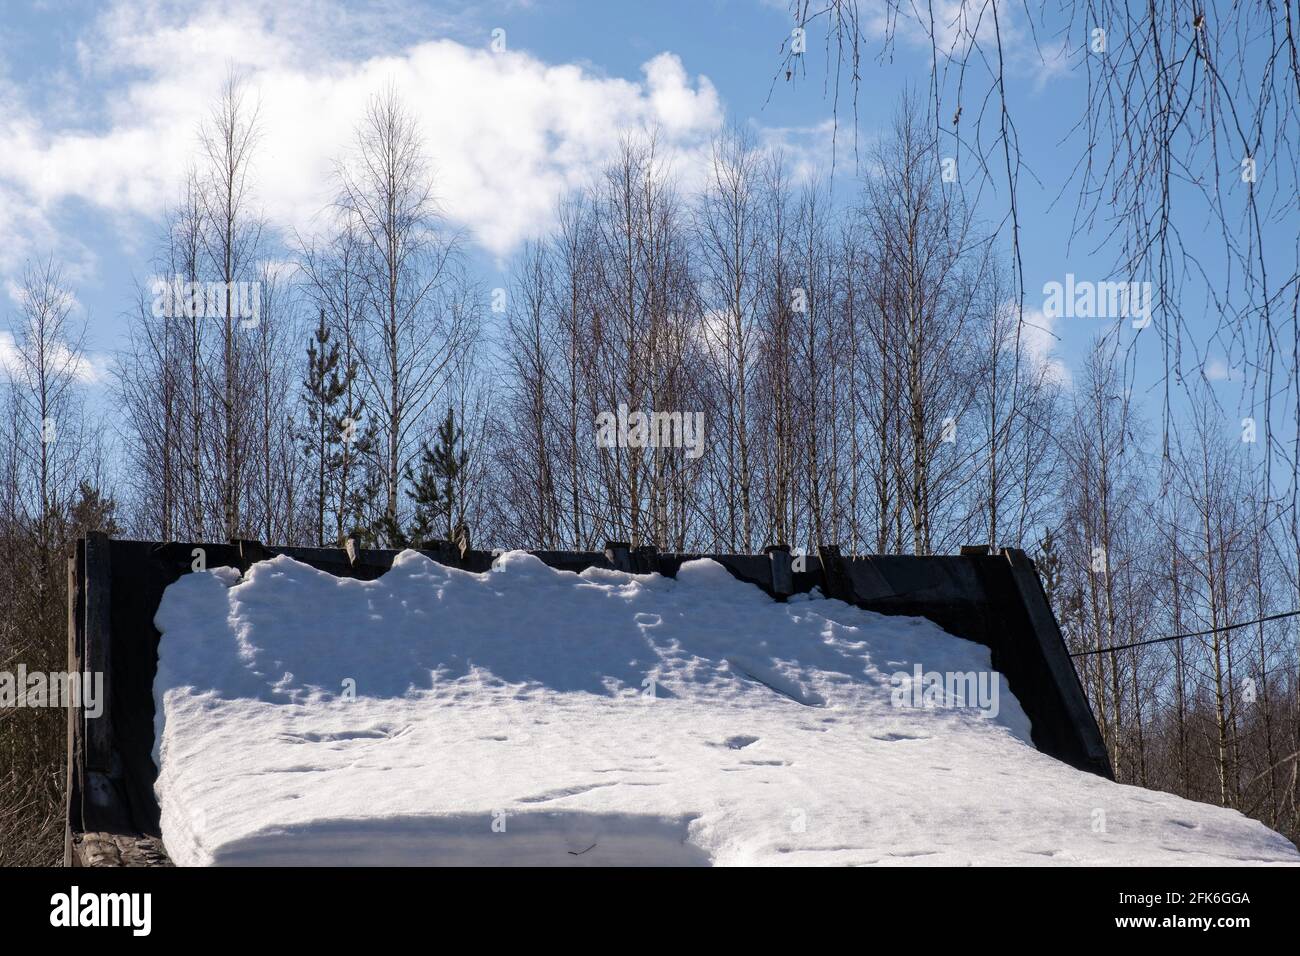 La neve bianca giace sul tetto di un piccolo fienile in una giornata di sole primavera, la Russia. Foto Stock